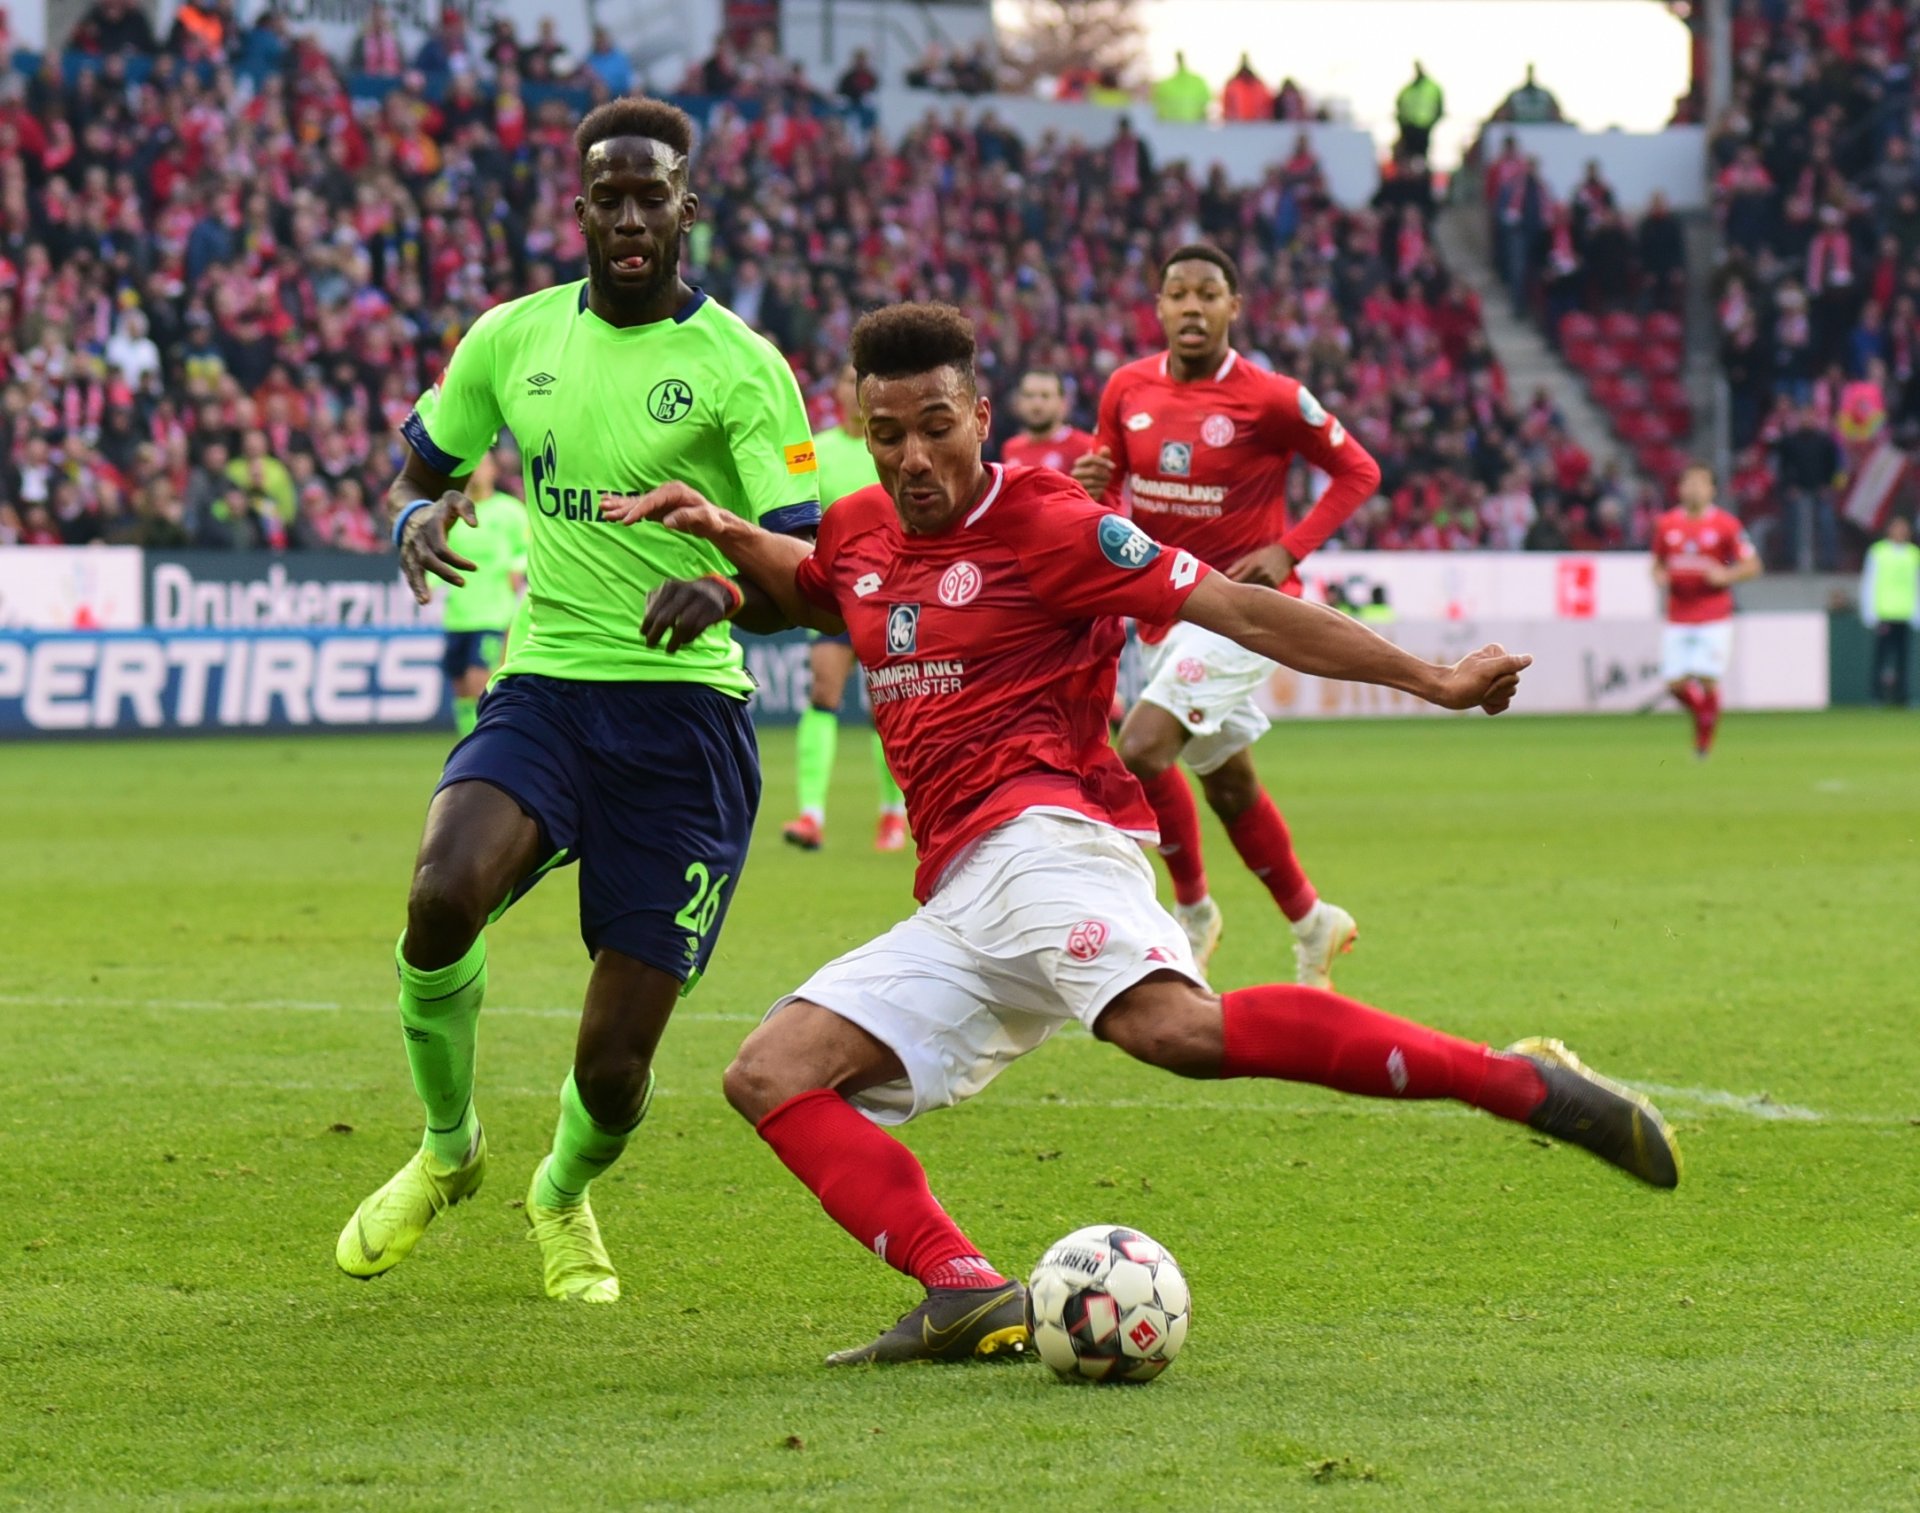 Den Schalker Innenverteidiger Salif Sané hat Karim Onisiwo soeben ausgetanzt, jetzt erzielt der Mainzer Stürmer das 3:0. Und macht seinen ersten Bundesliga-Doppelpack perfekt.